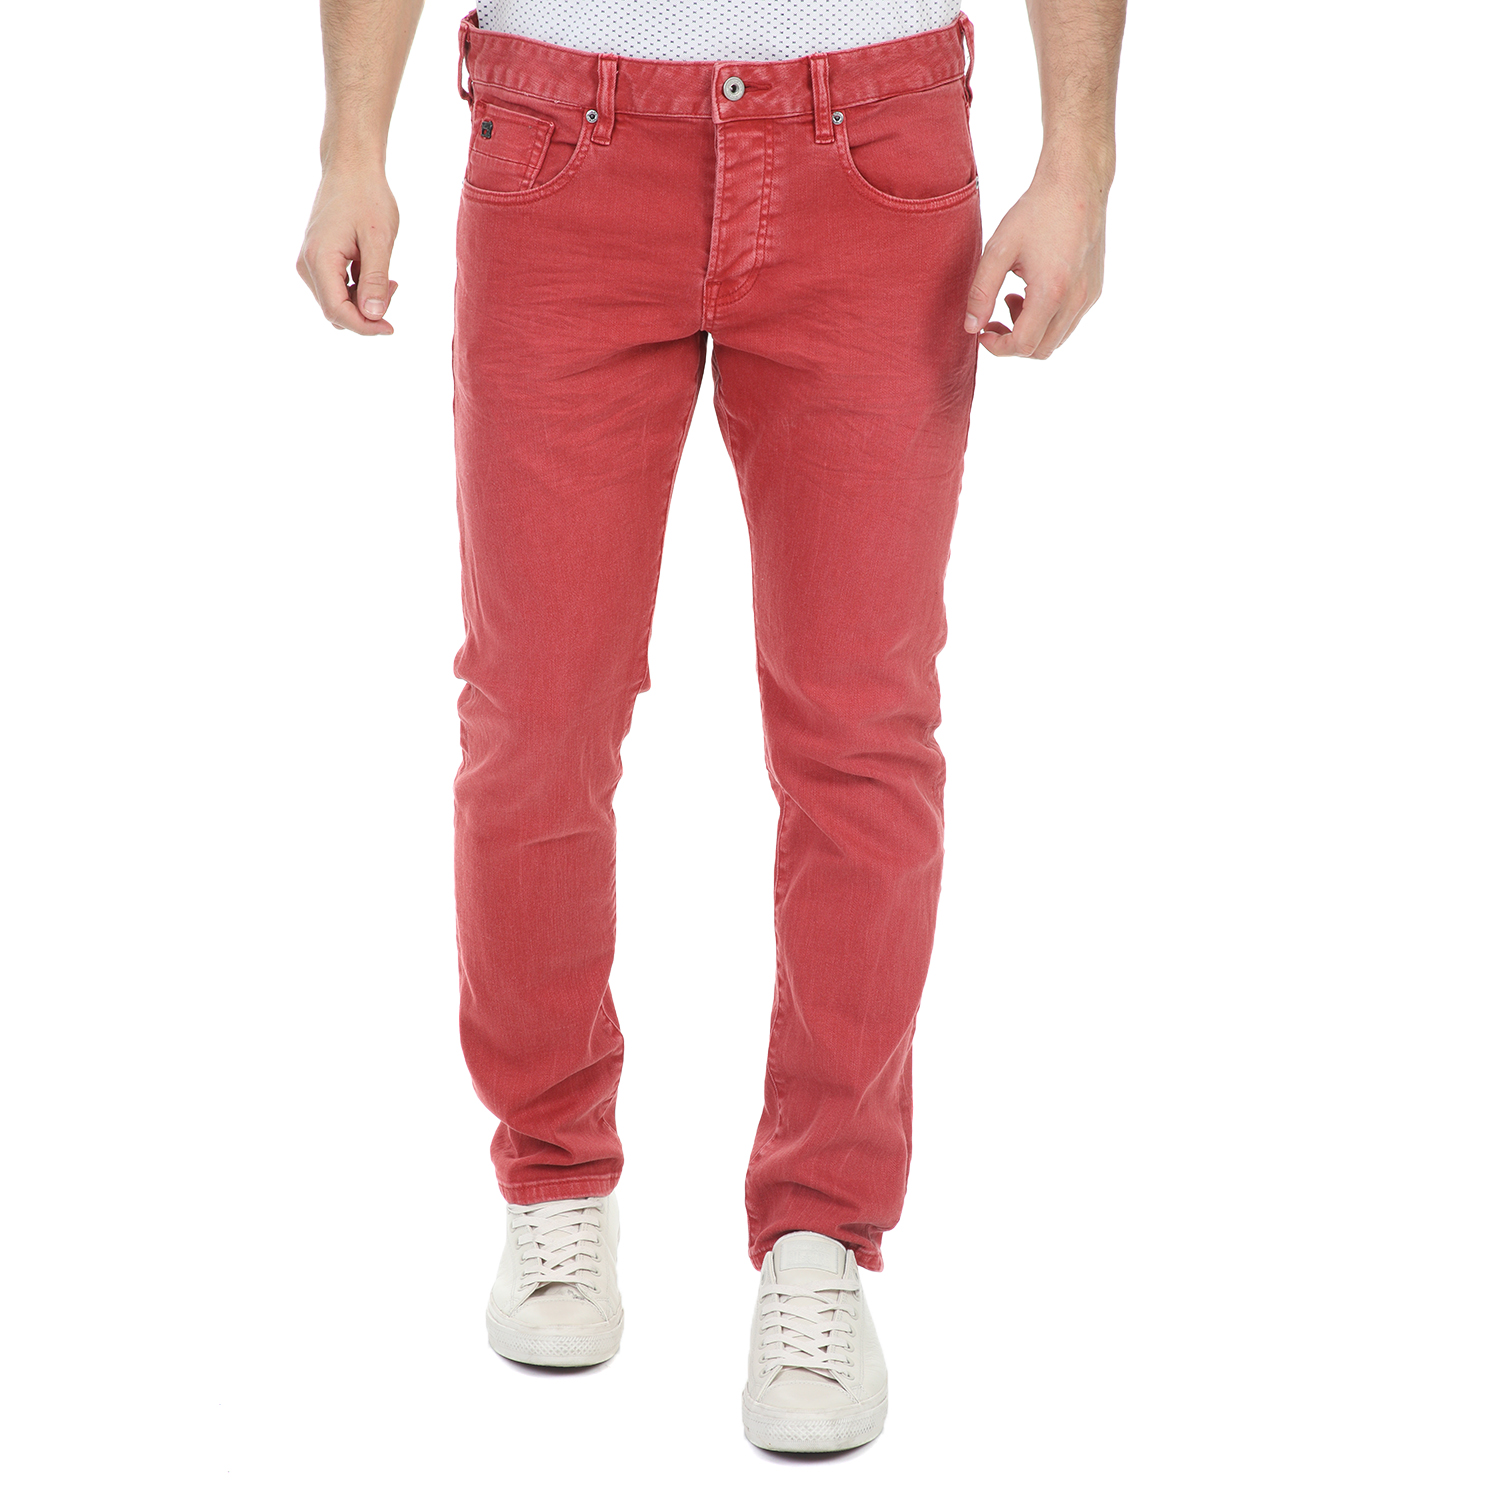 Ανδρικά/Ρούχα/Τζίν/Straight SCOTCH & SODA - Ανδρικό jean παντελόνι SCOTCH & SODA RALSTON - GARMENT DYE κόκκινο